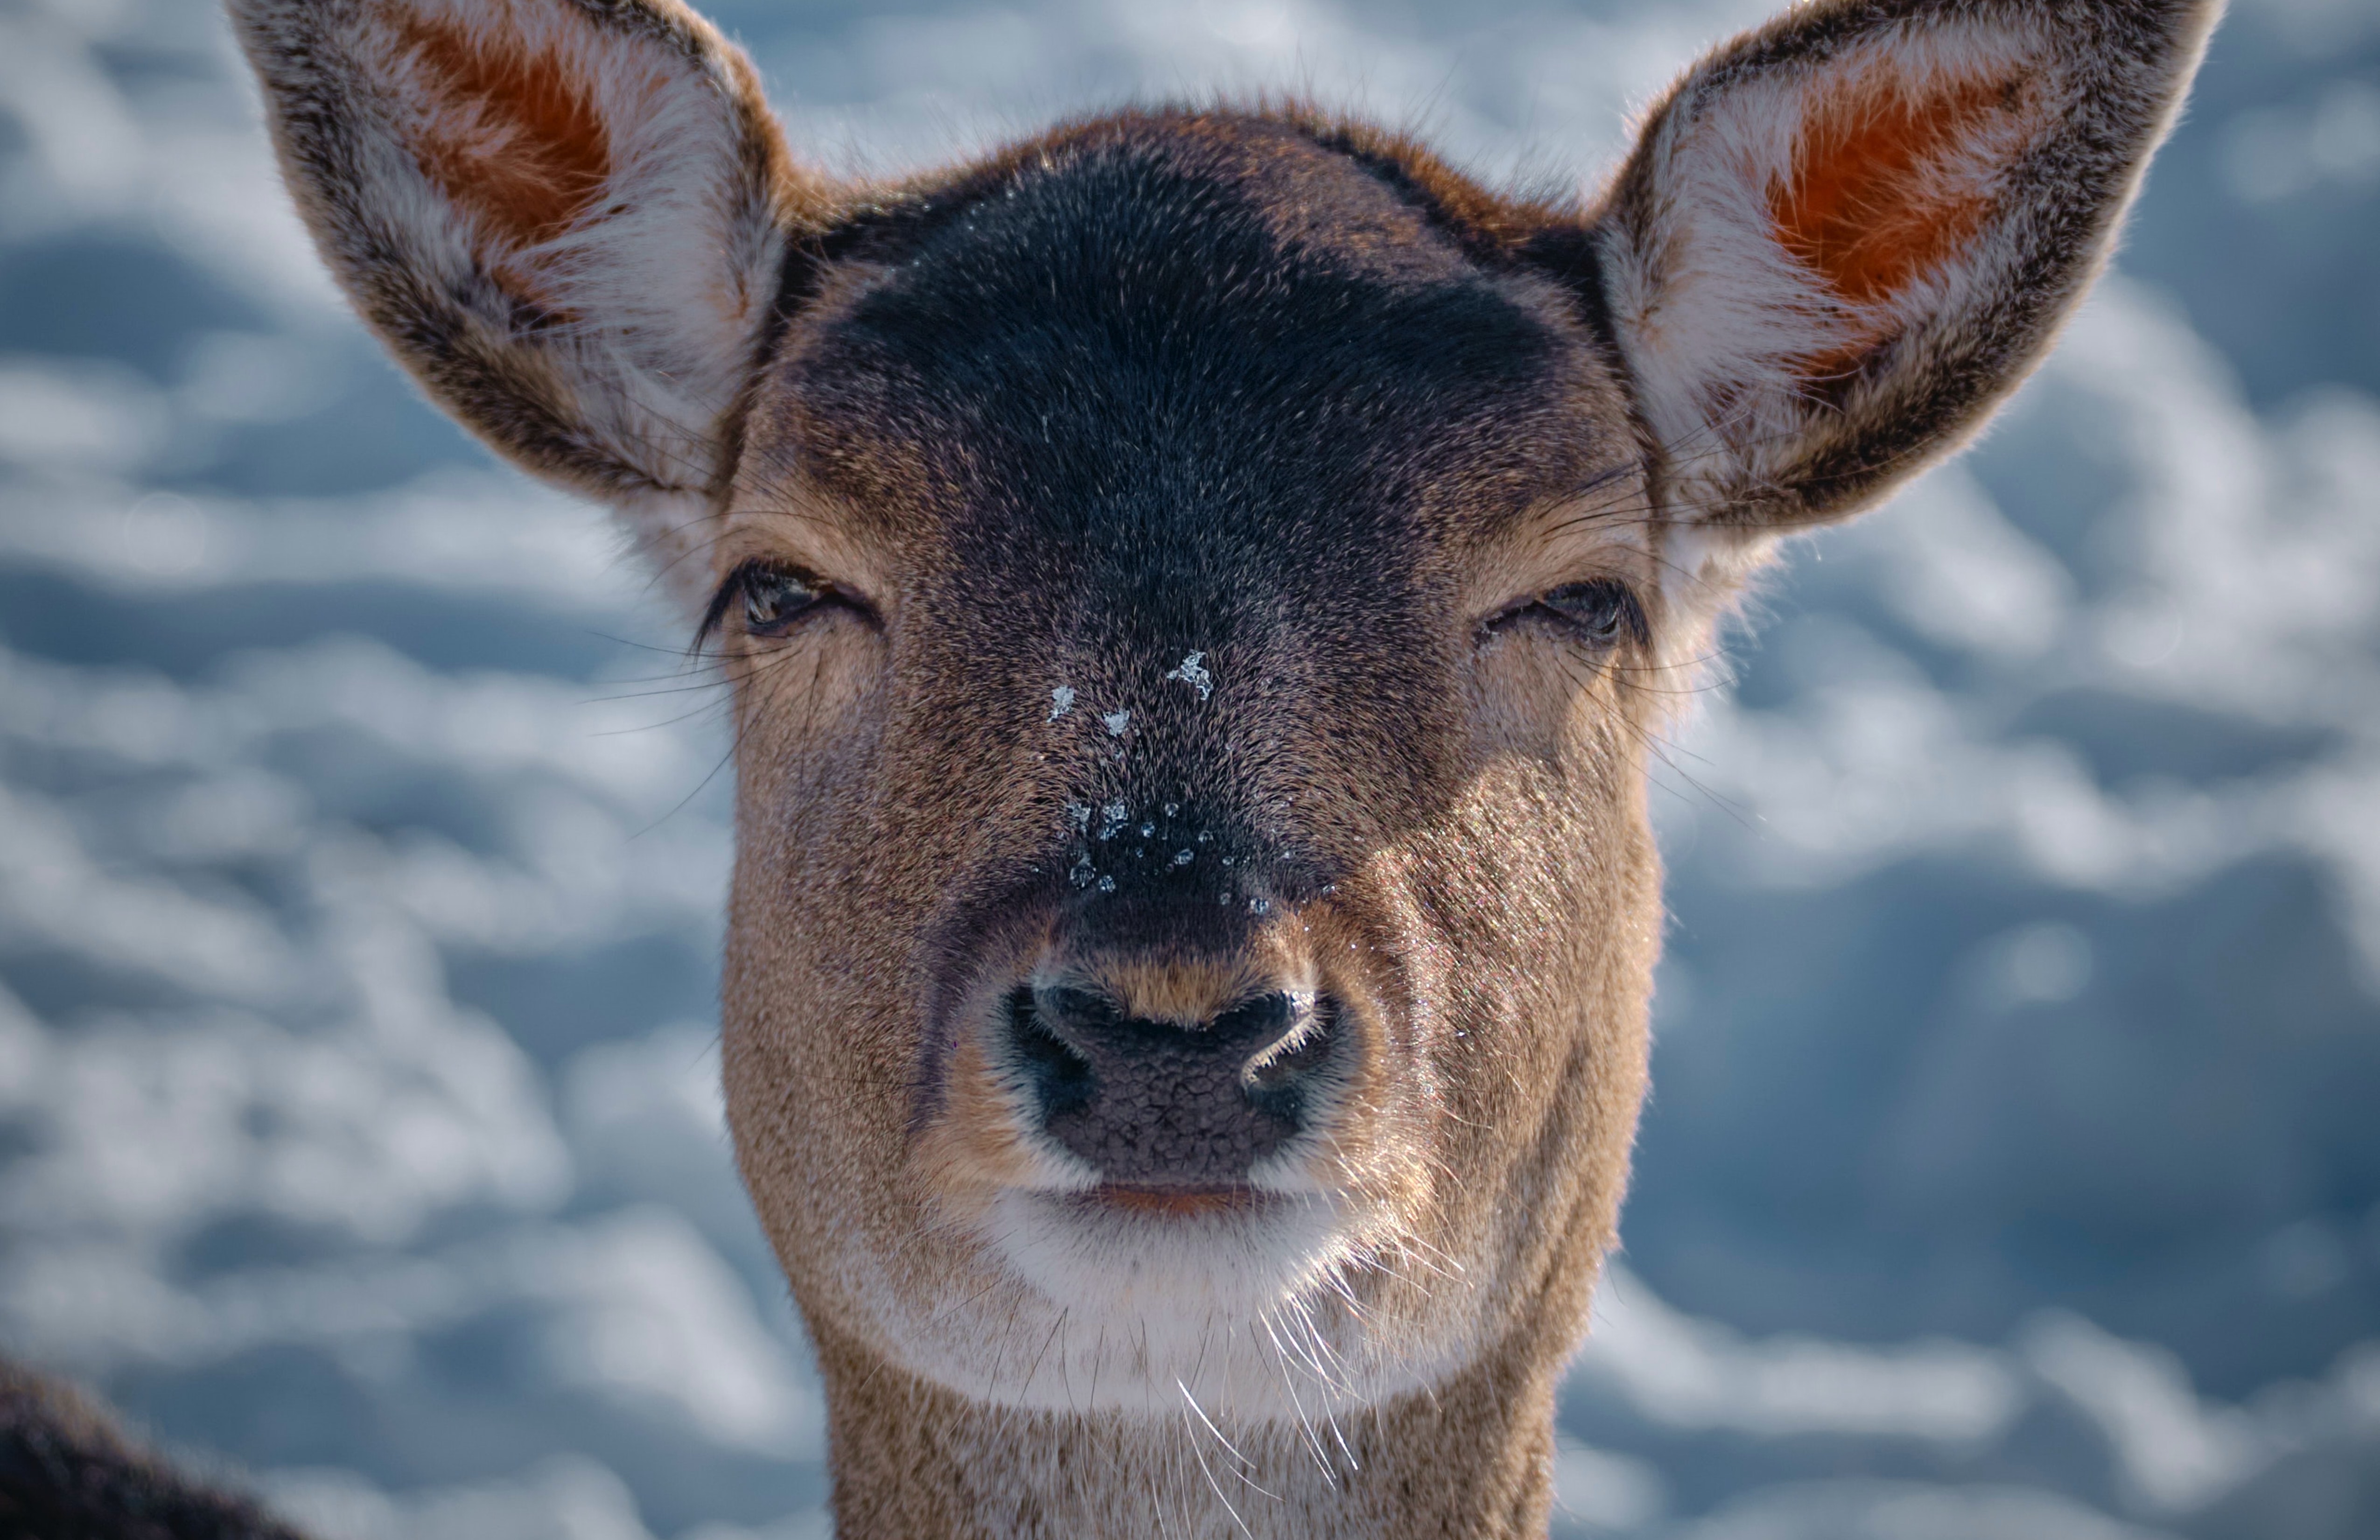 Kopf eines braunen Rehes mit Schneeflocken auf der Nase.